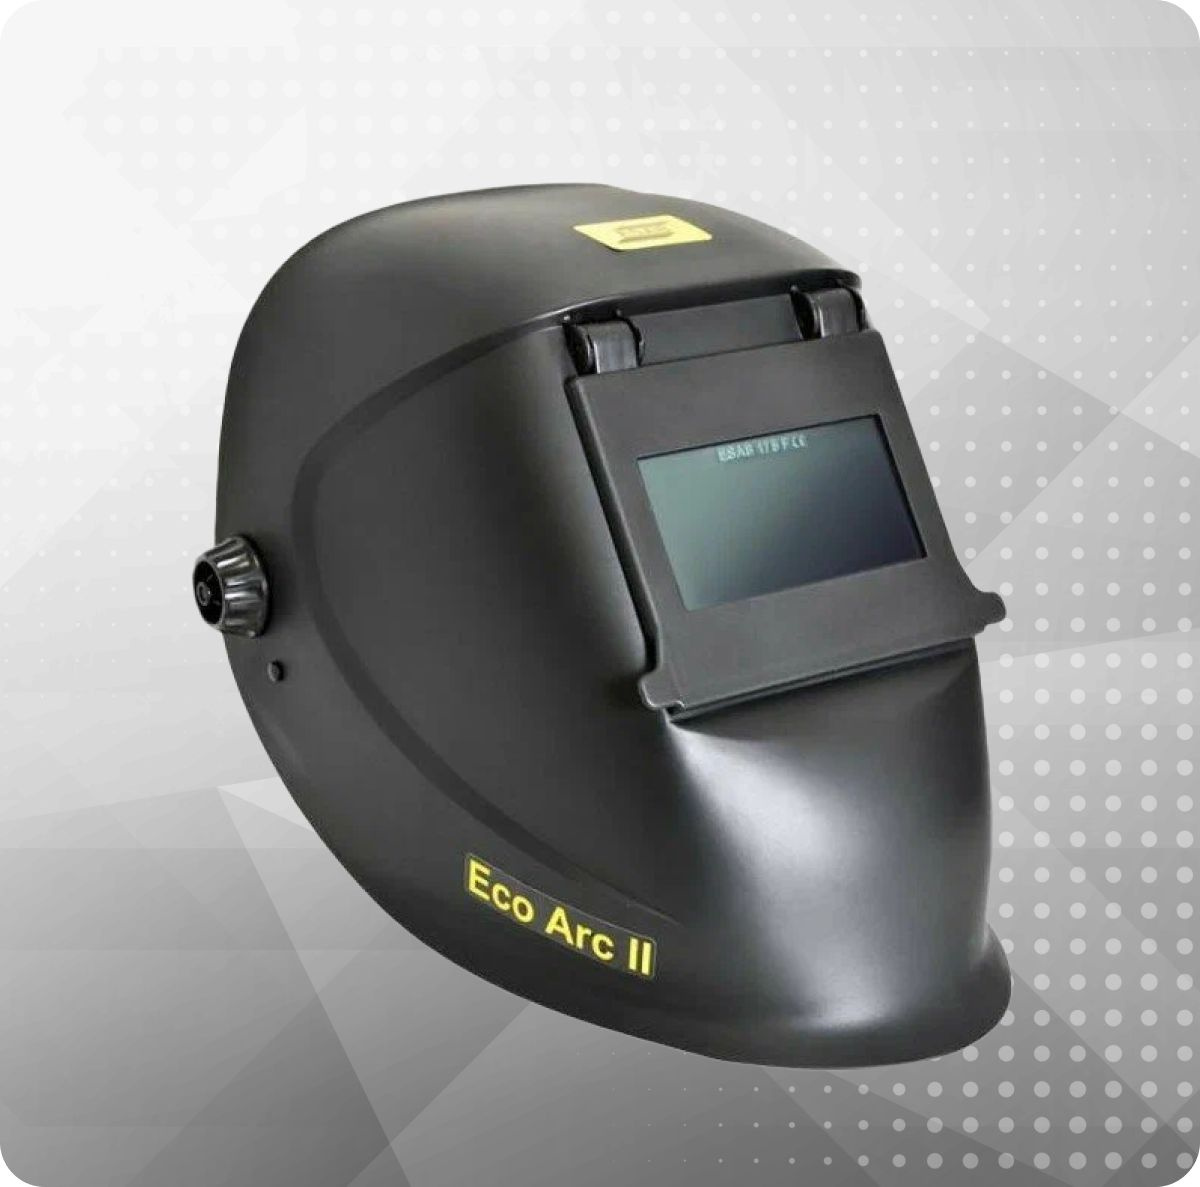 Новая сварочная маска Eco-Arc II – наша последняя разработка в области масок для сварки с откидным экраном. Корпус из легкого полипропилена обеспечивает полную защиту лица, что позволяет использовать маску для сварки в любых положениях. Новое оголовьем Eco Head Gear регулируется в 5-ти положениях. Маска поставляется в комплекте с защитной линзой 90 X 110 из минерального стекла со степенью затемнения 11 DIN